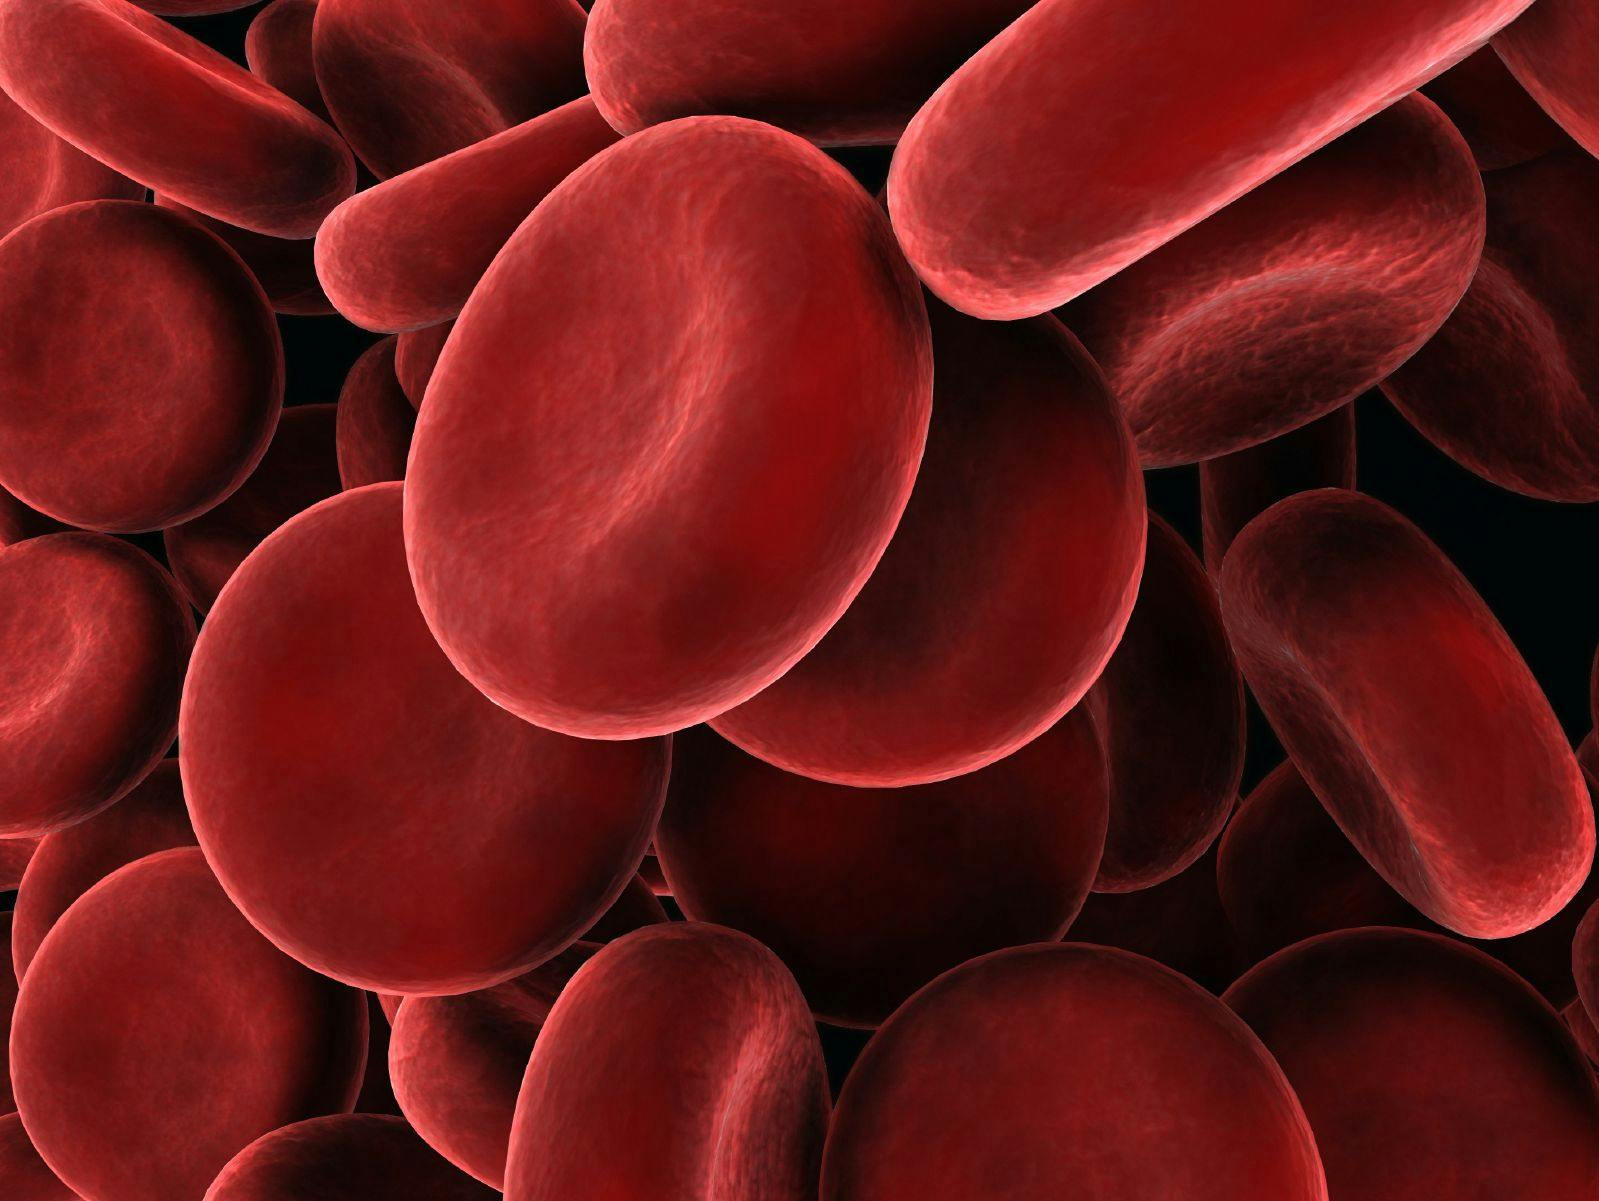 Digital illustration of blood cells.